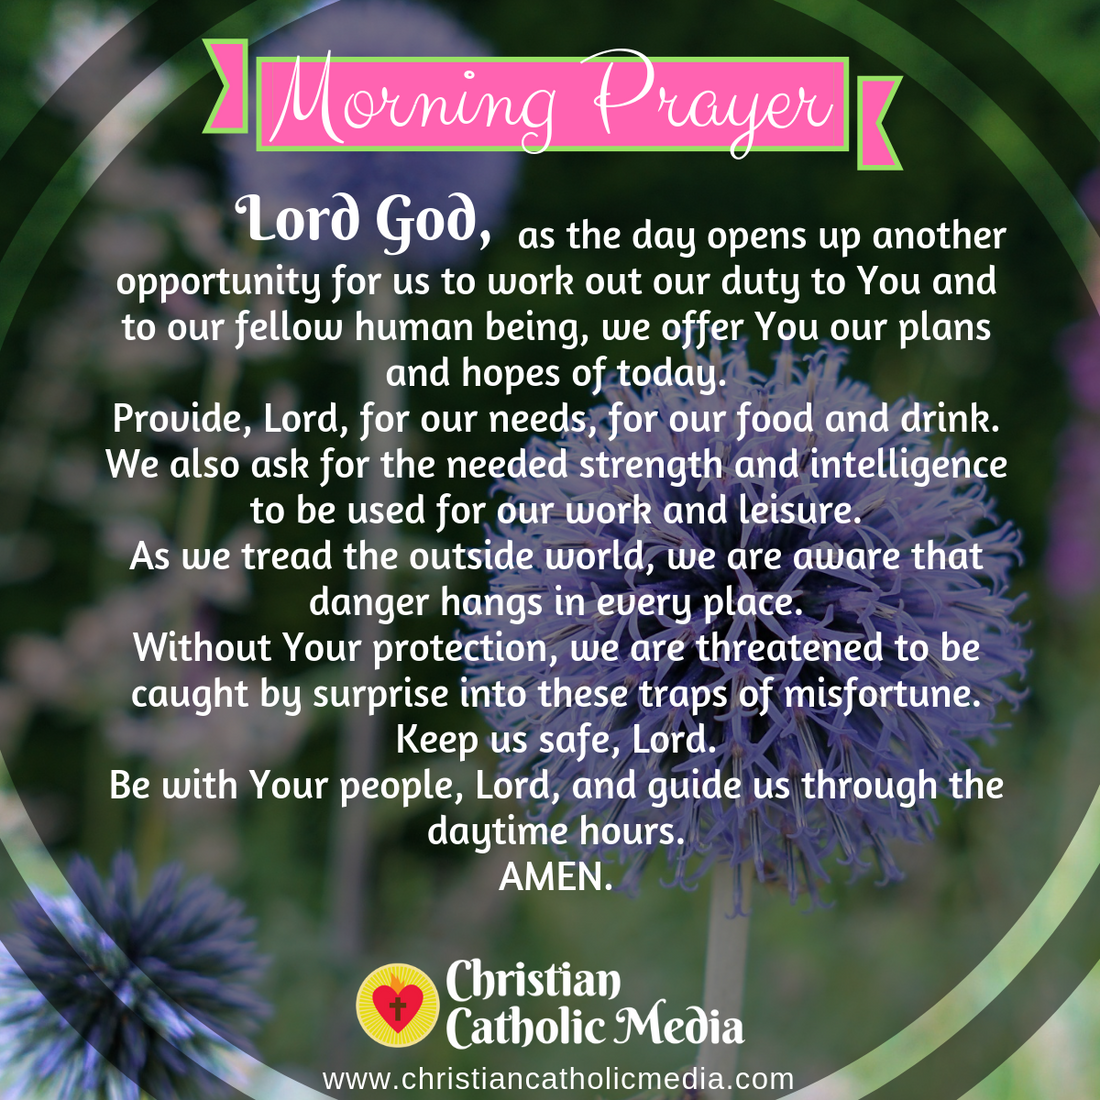 Morning Prayer Catholic Tuesday 1-28-2020